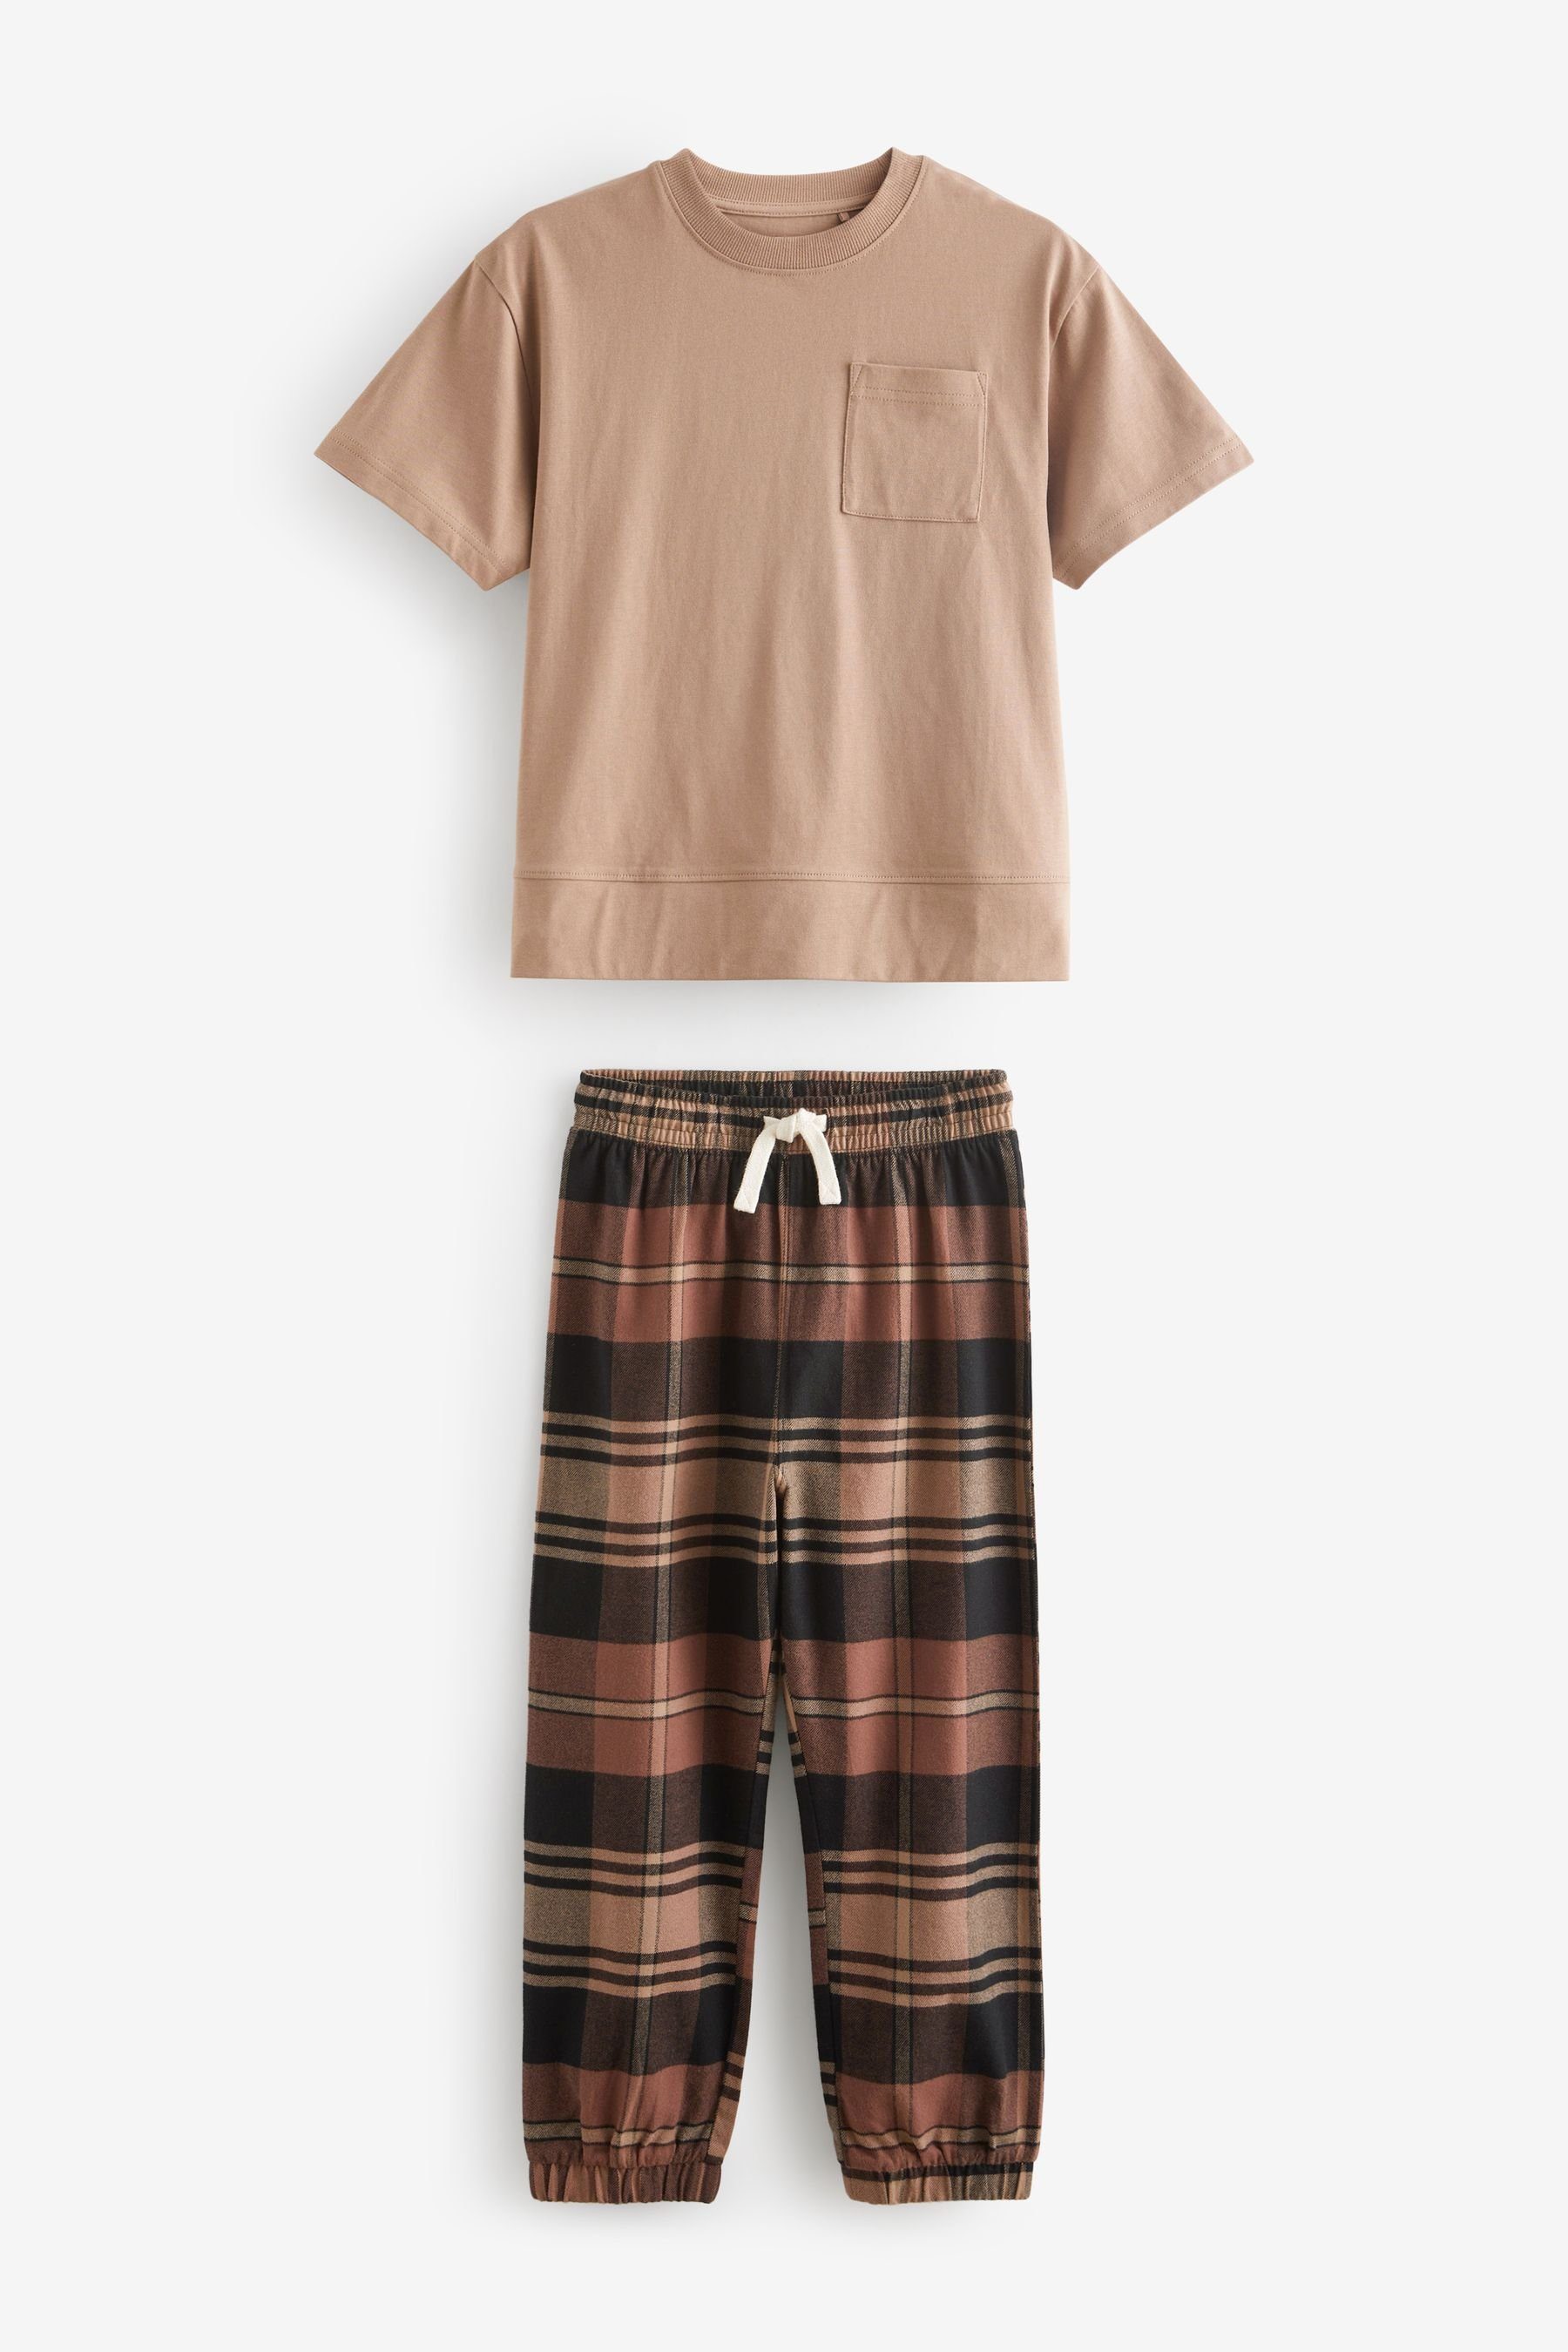 Next Pyjama Pyjamas 2er-Pack Chocolate Brown/Black (4 Check tlg) Bottom im